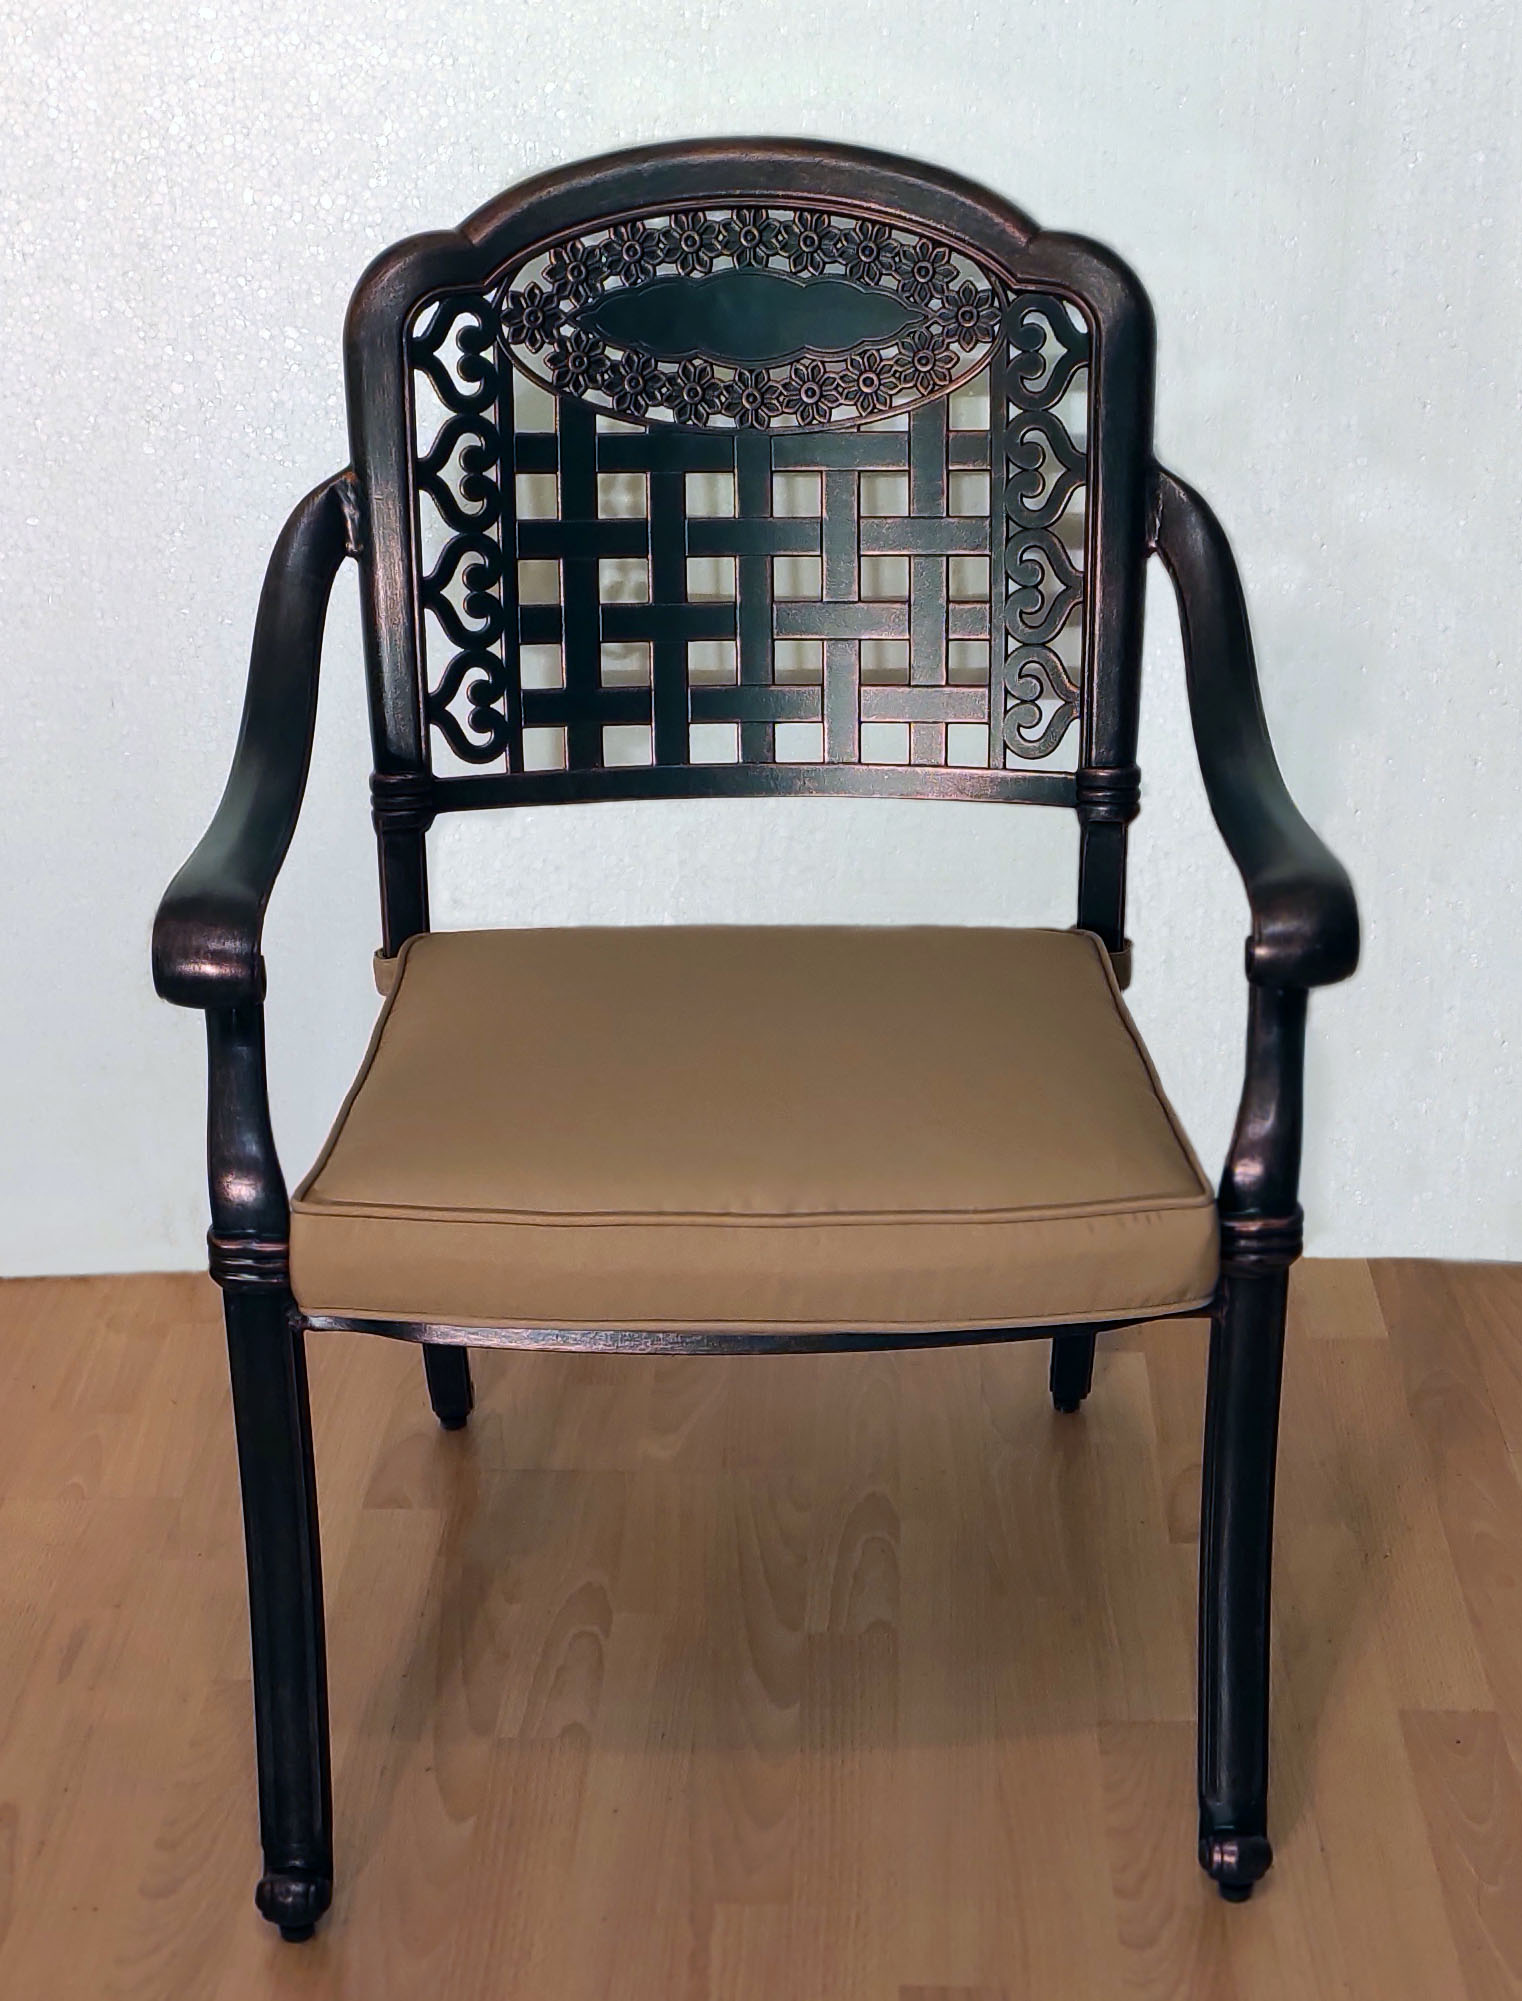 Кресло уличное металлическое, мебель из литого алюминия, стул для сада и дачи из металла, мебель для кафе из металла, уличная мебель из алюминия и чугуна, чугунная мебель, металлический стул садовый